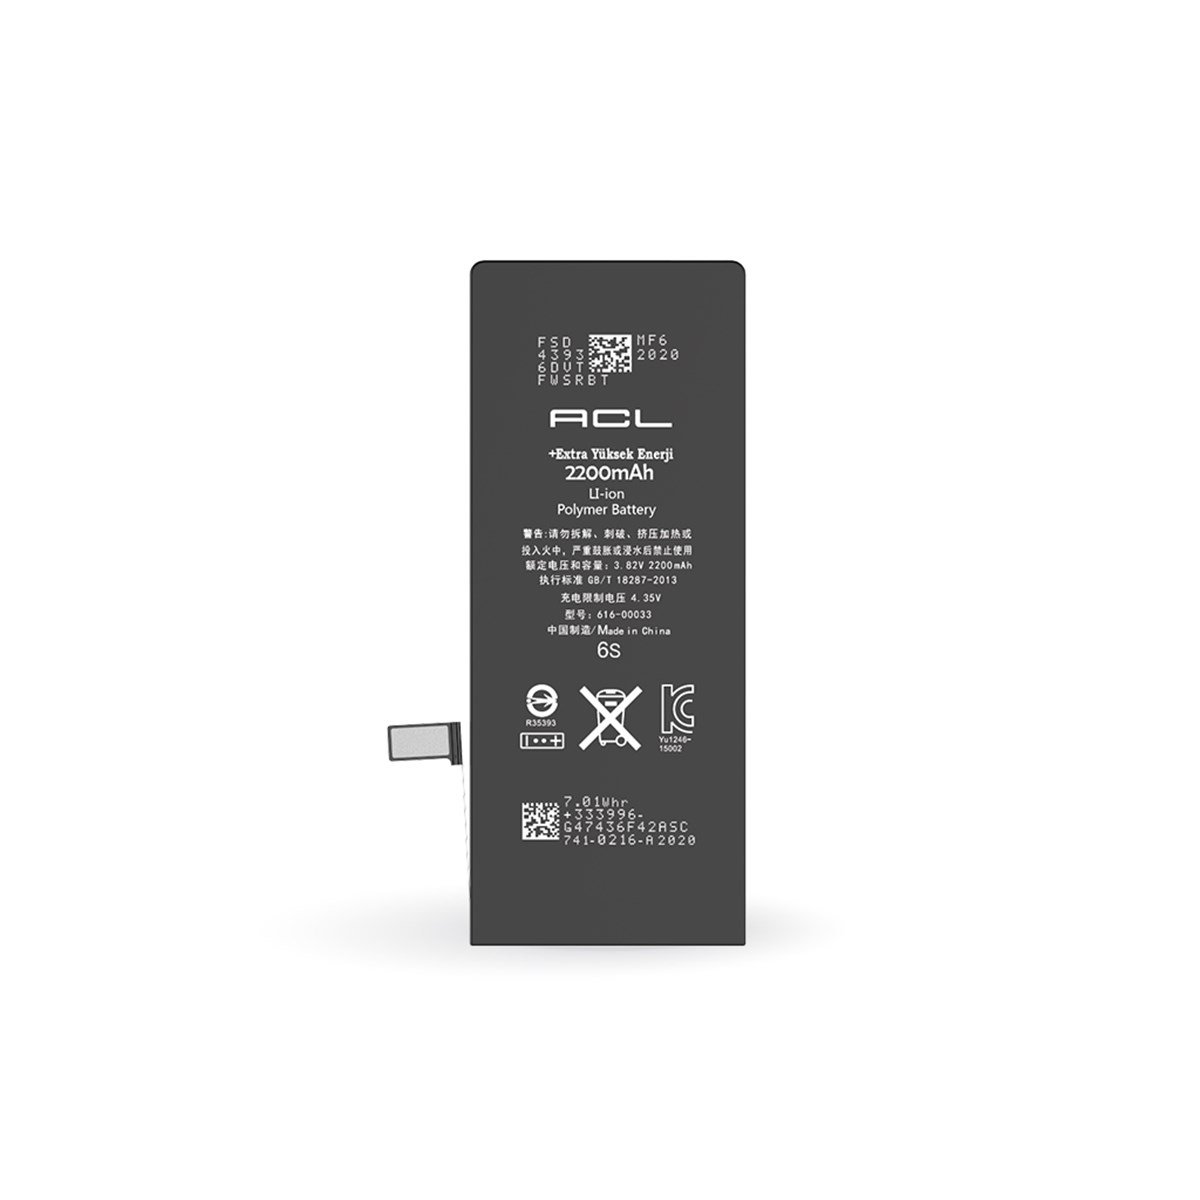 InfinitePower™ 2200mAh Extra iPhone 6S Batarya